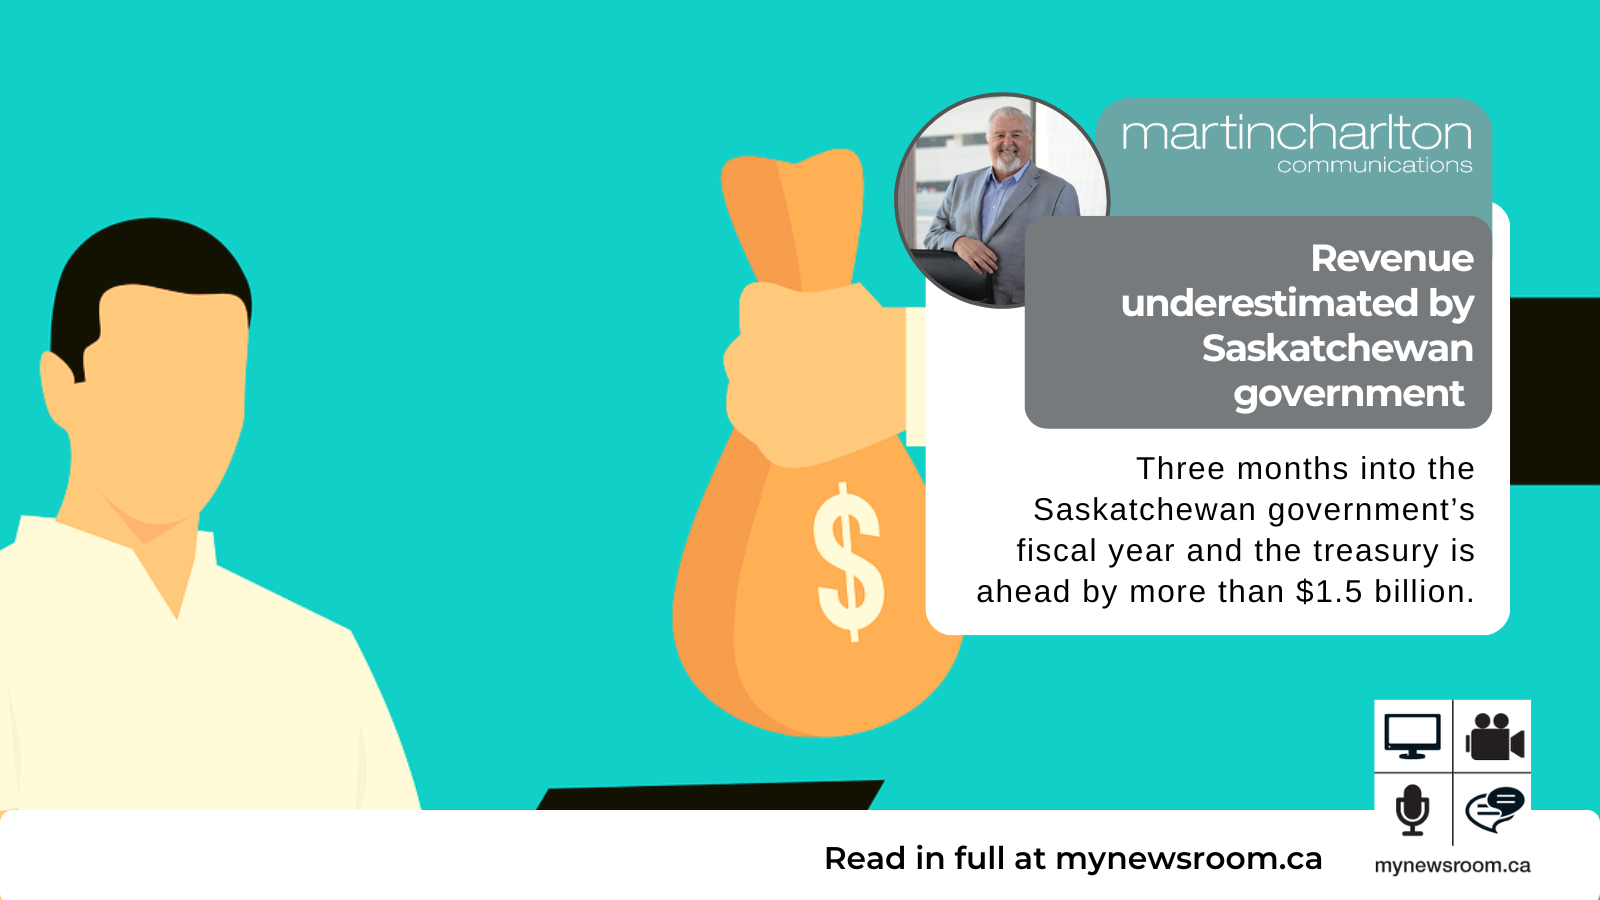 Revenue underestimated by Saskatchewan government now in surplus